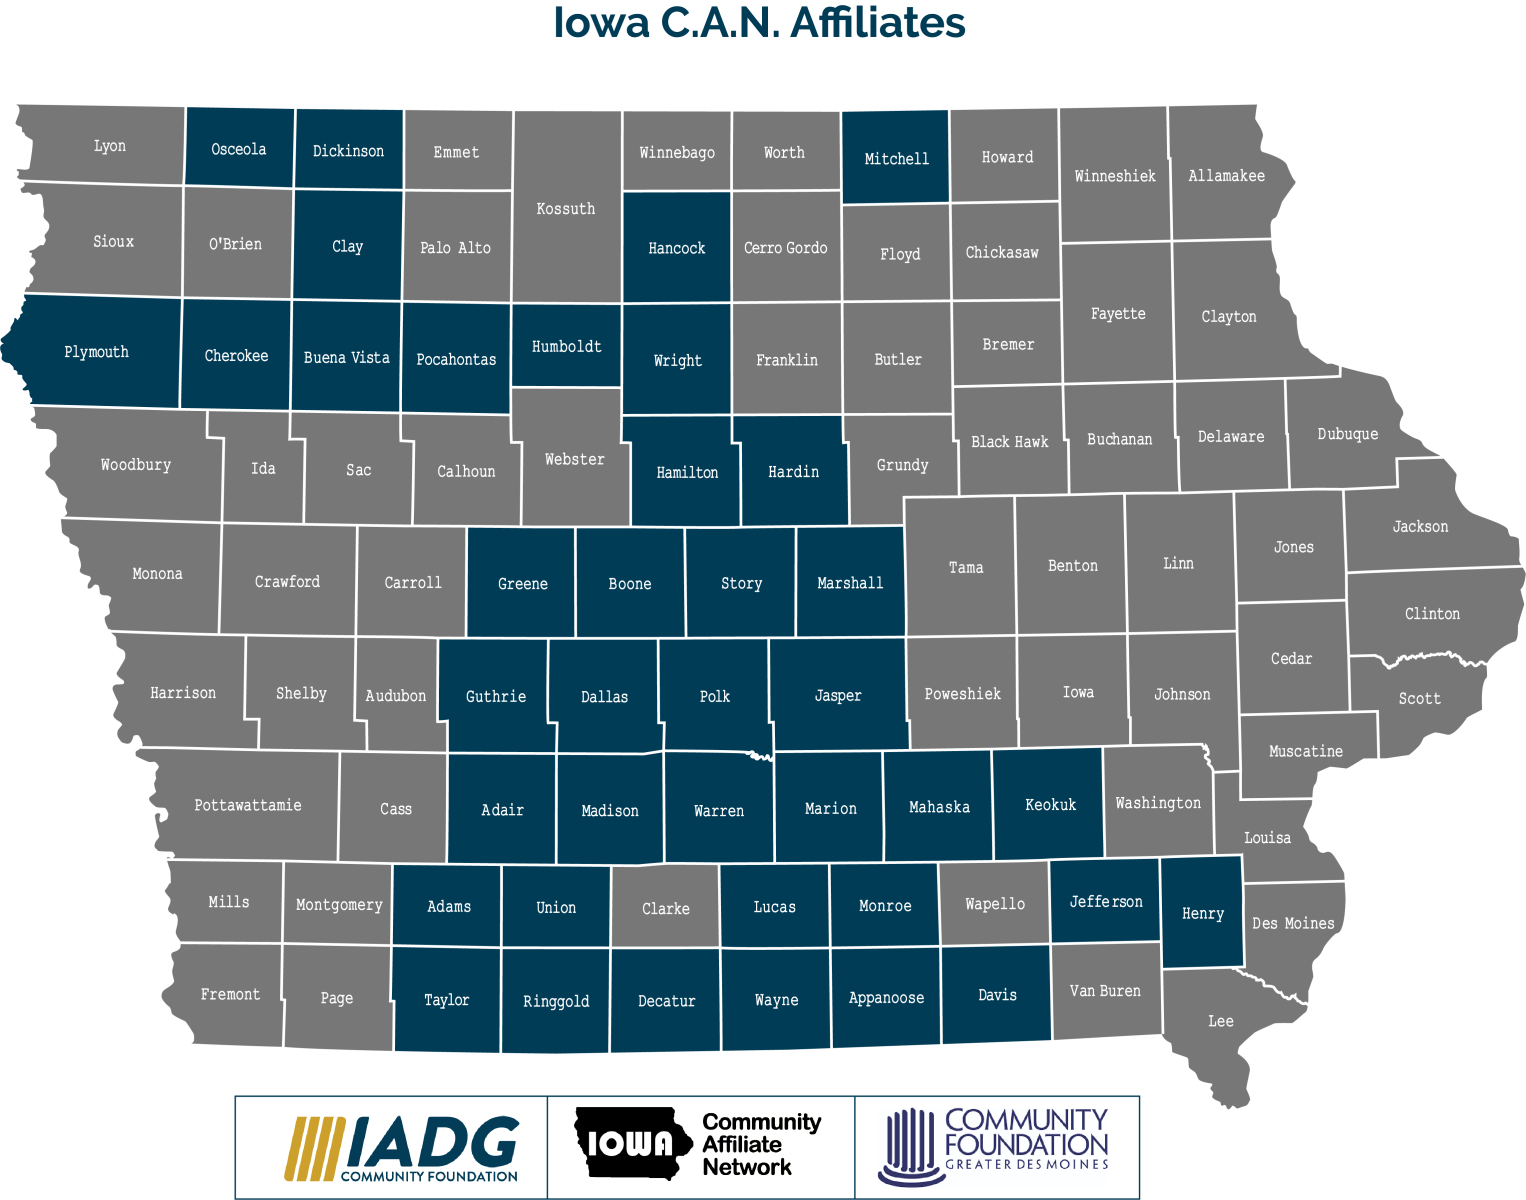 Iowa C.A.N. Network